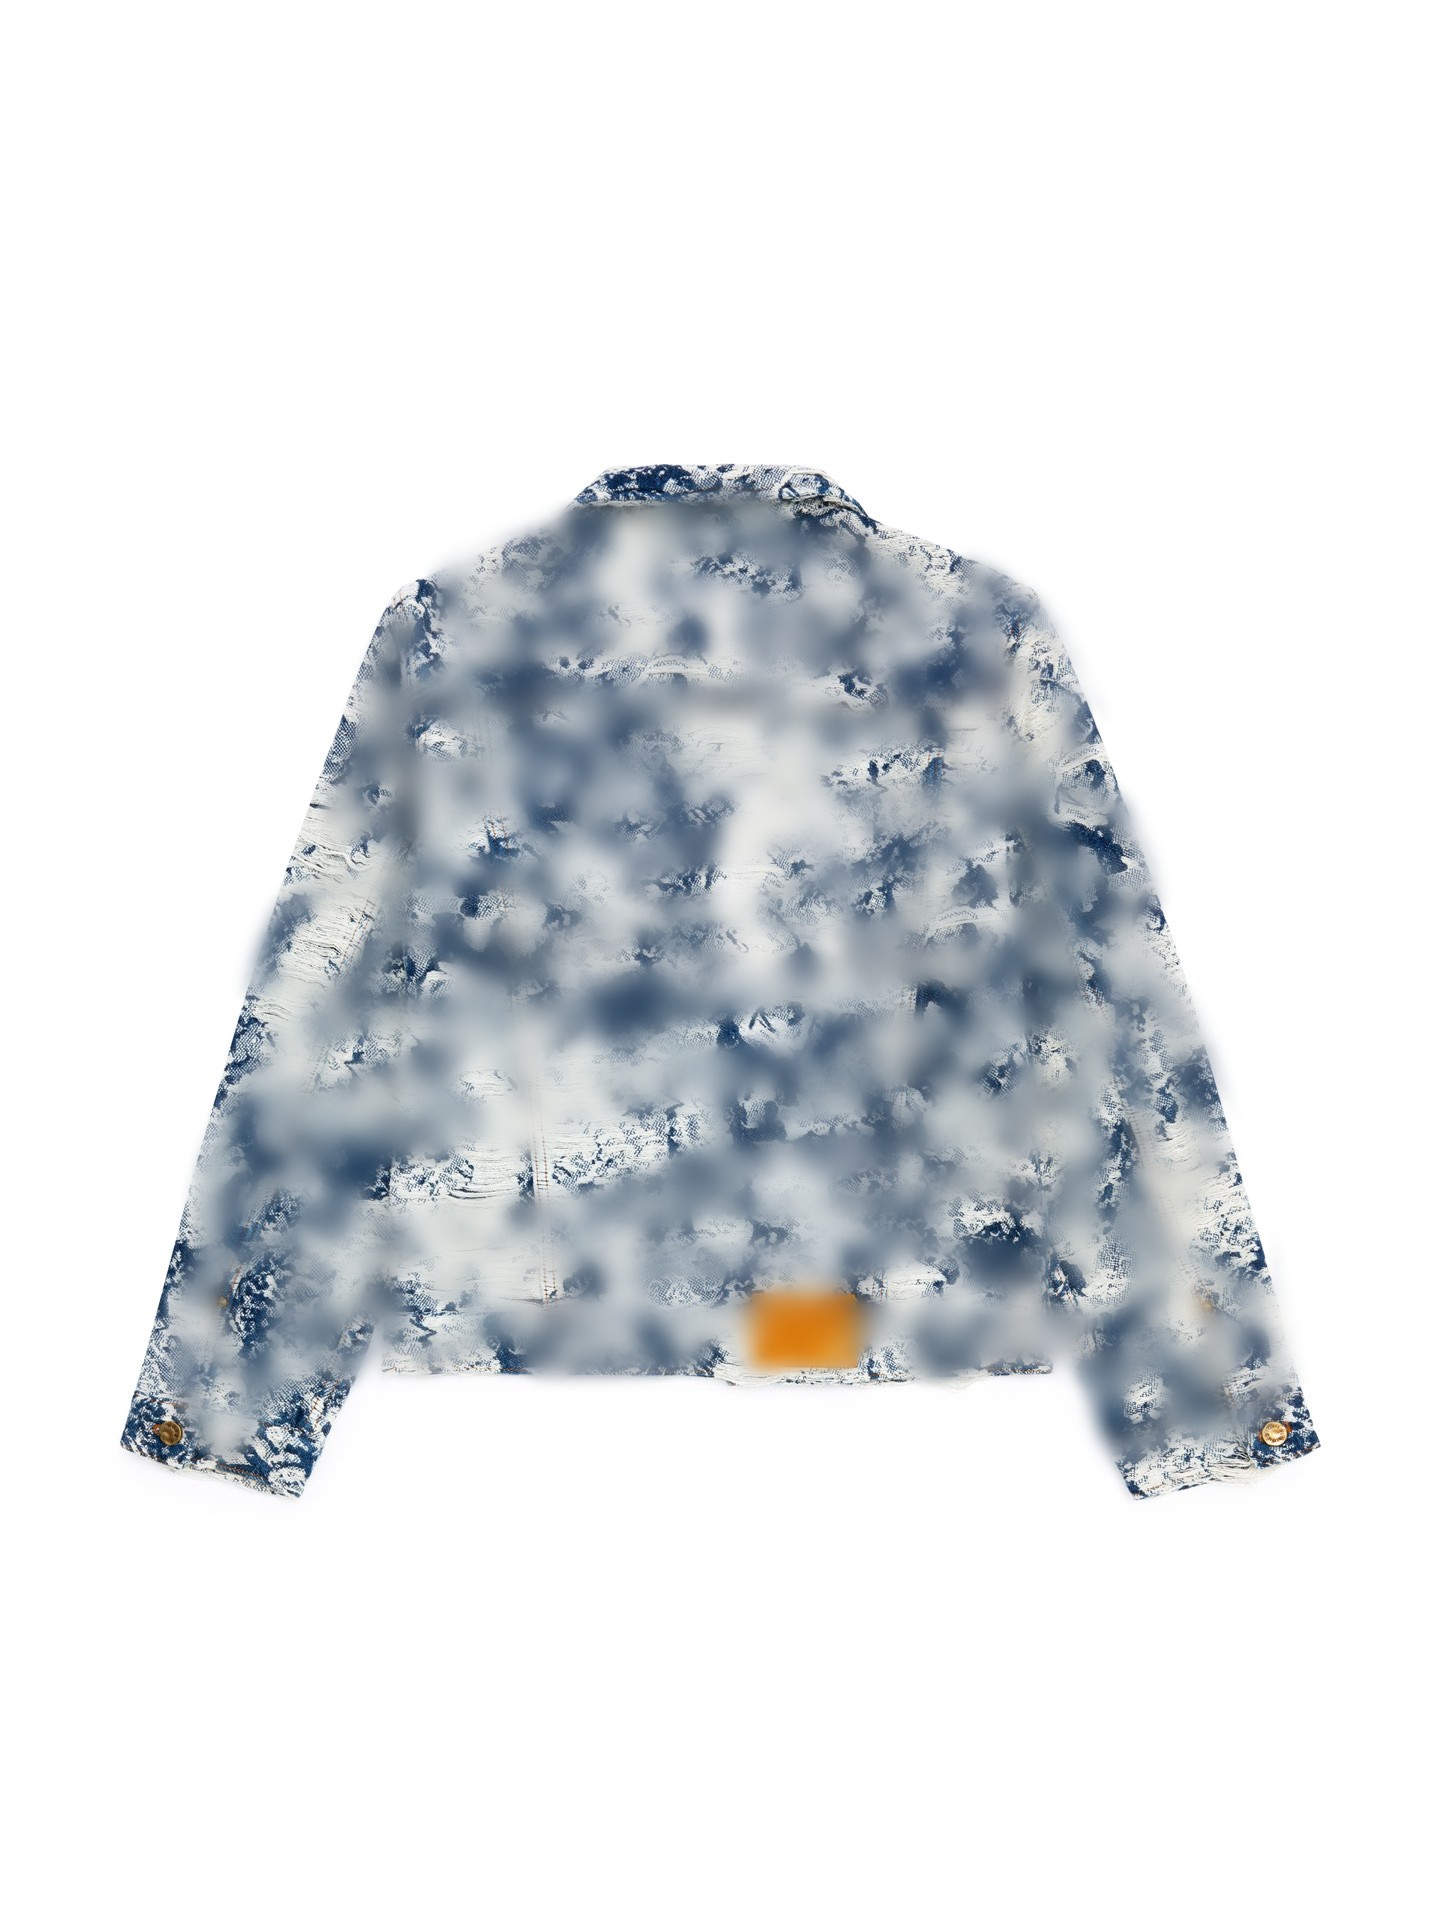 Kurtki męskie projektant odzieży męskiej Designer Letter Drukuj bluza moda High Street krótkie rękawie zima zimowa kurtka termiczna top qhx2